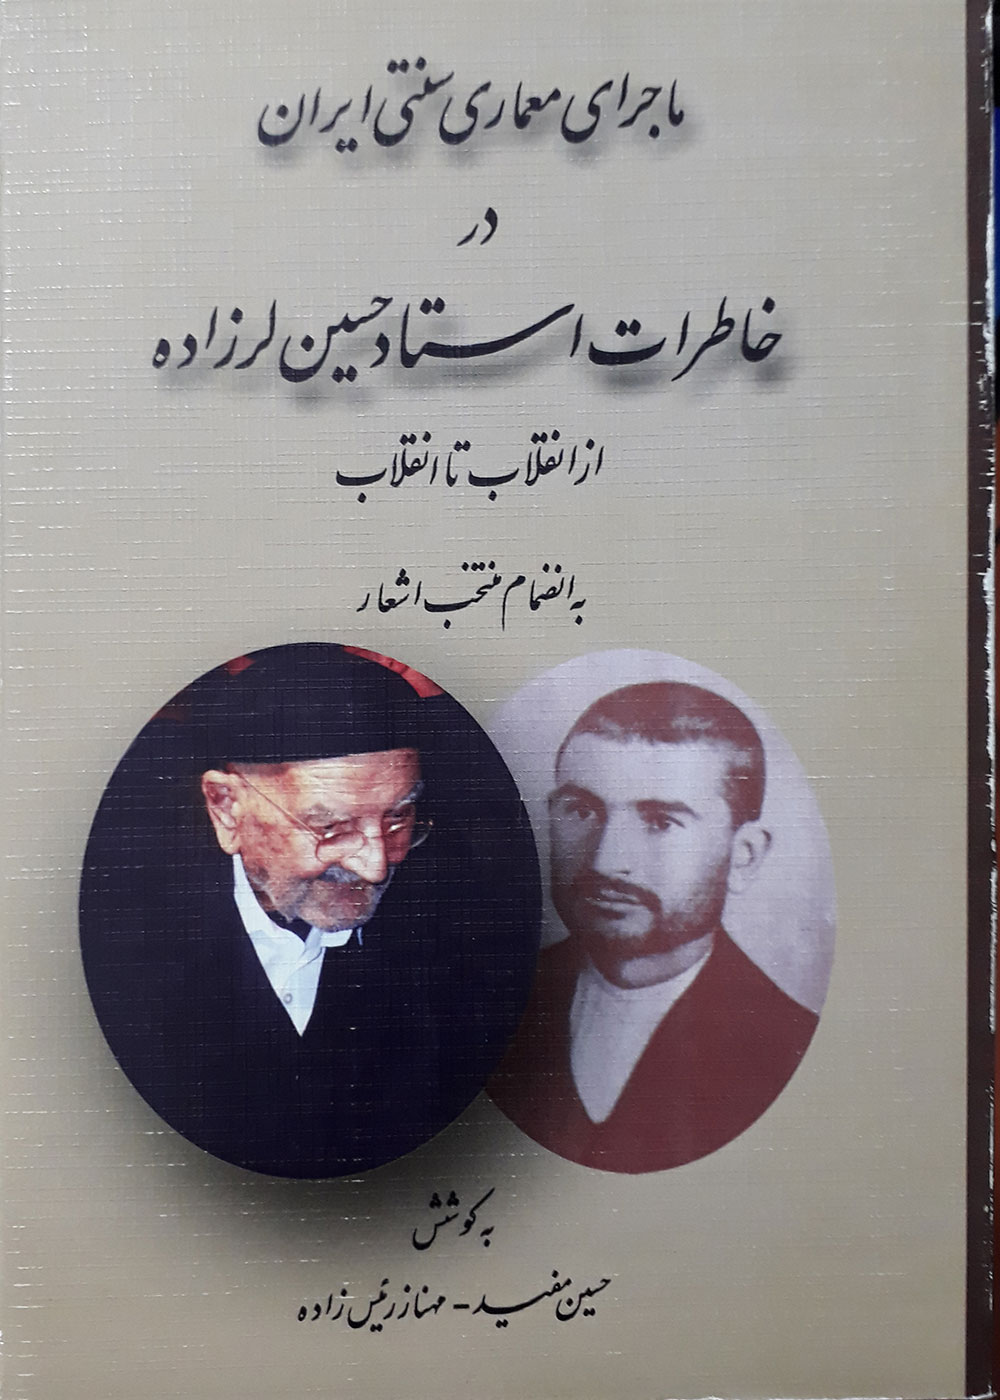 کتاب ماجرای معماری سنتی ایران در خاطرات استاد حسین لرزاده از انقلاب تا انقلاب